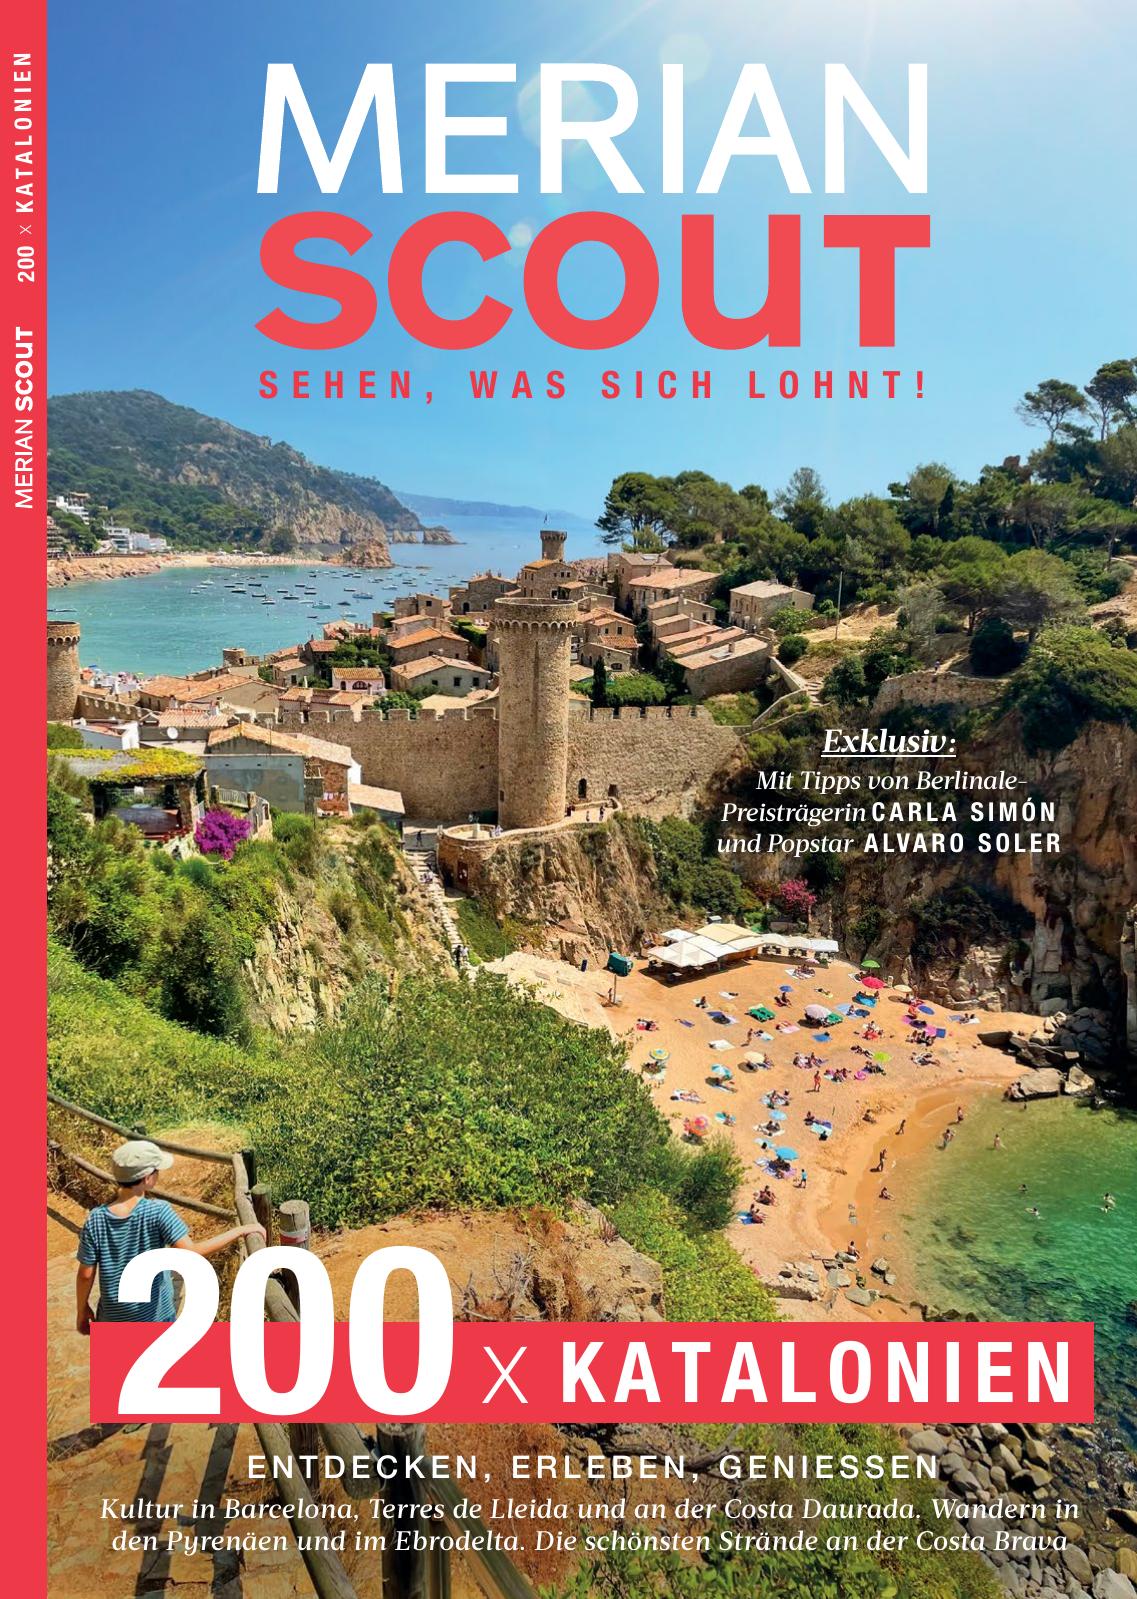 MERIAN Scout 22/2022 Katalonien